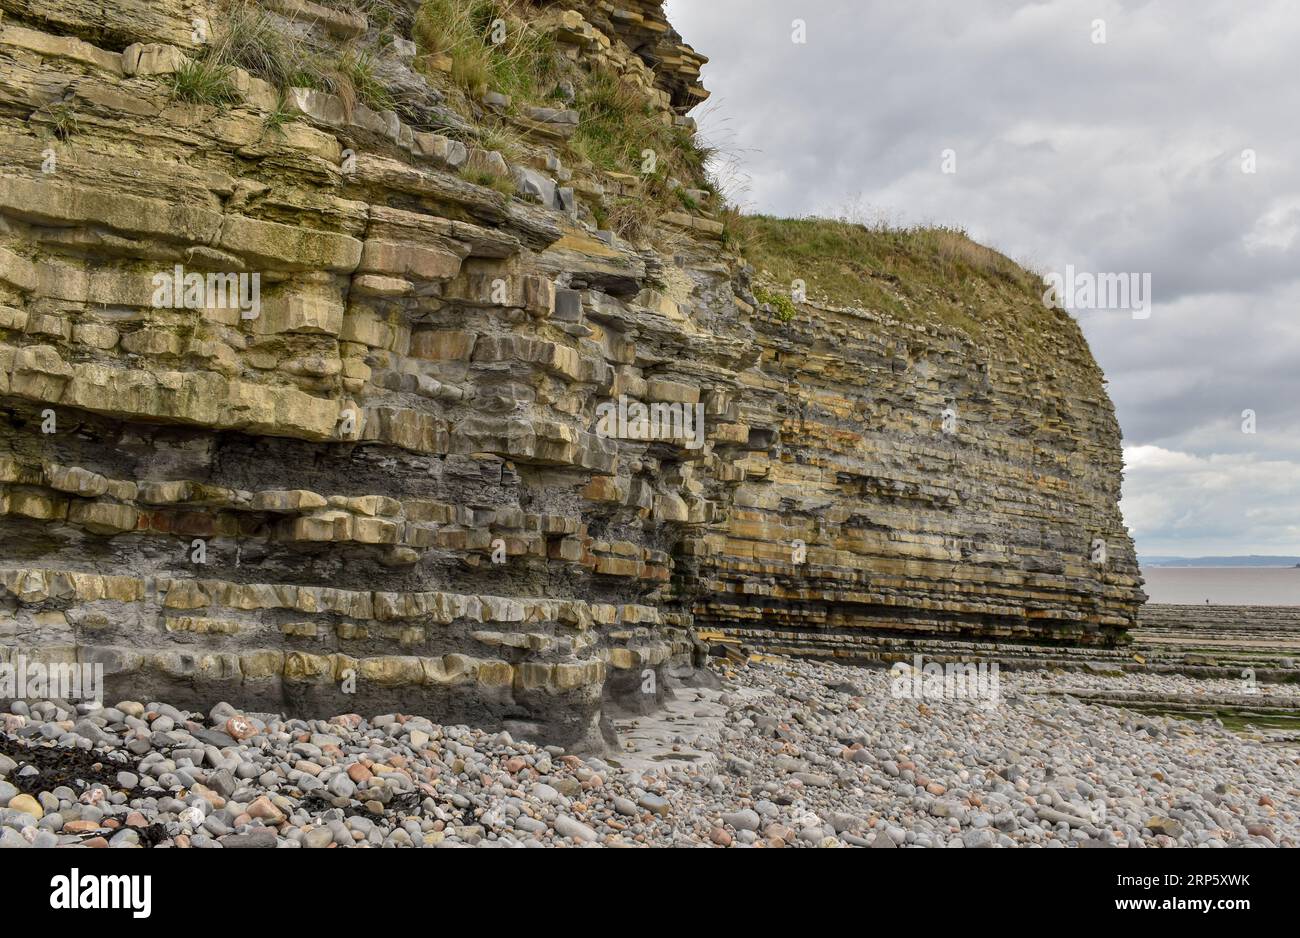 Diese Klippe an einem walisischen Strand zeigt, was die Auswirkungen der Küstenerosion und des Wetters im Laufe der Zeit auf die Felsschichten, die ihn stützen, bewirken können. Stockfoto